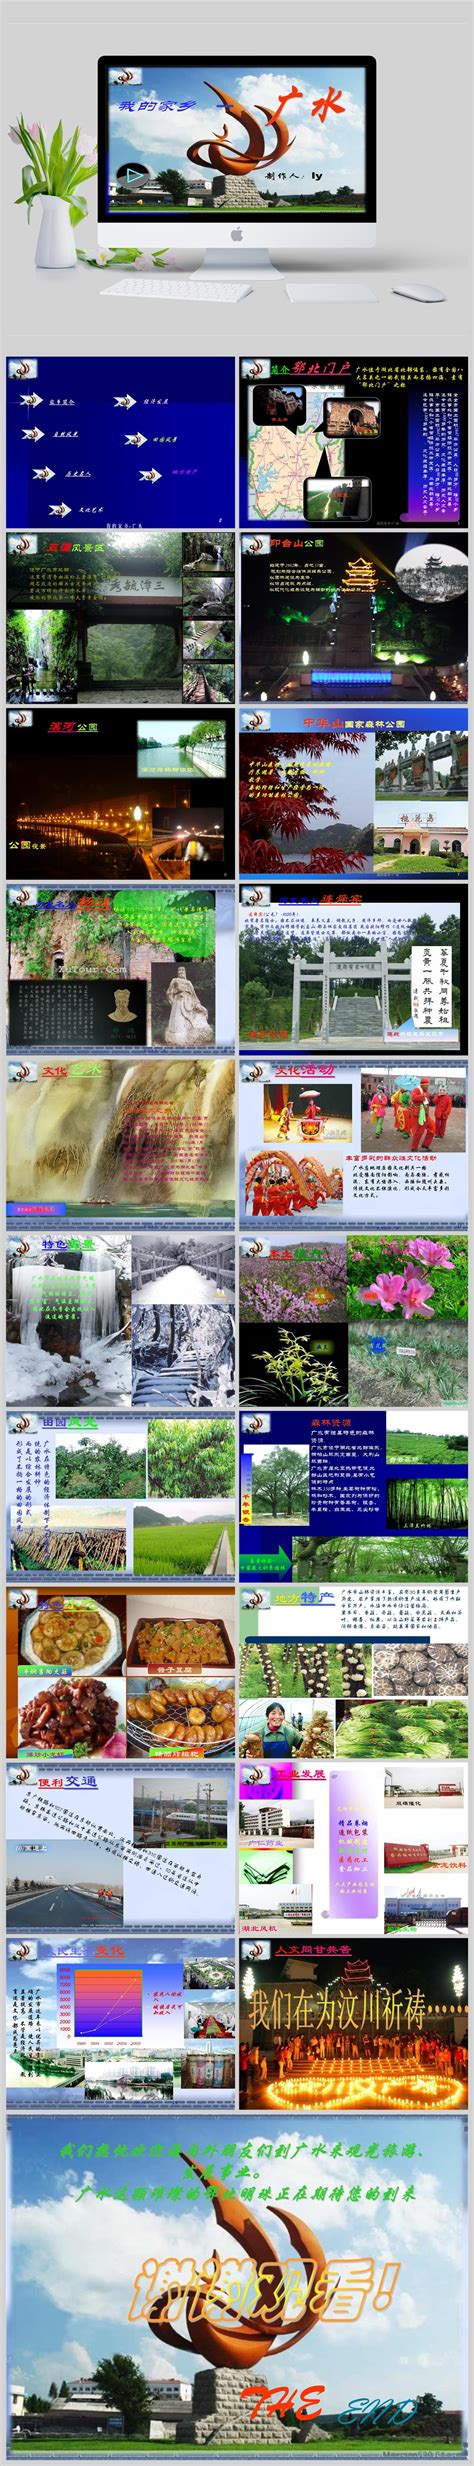 广东省水利厅 - 省水利厅推动水文化水经济蓬勃发展